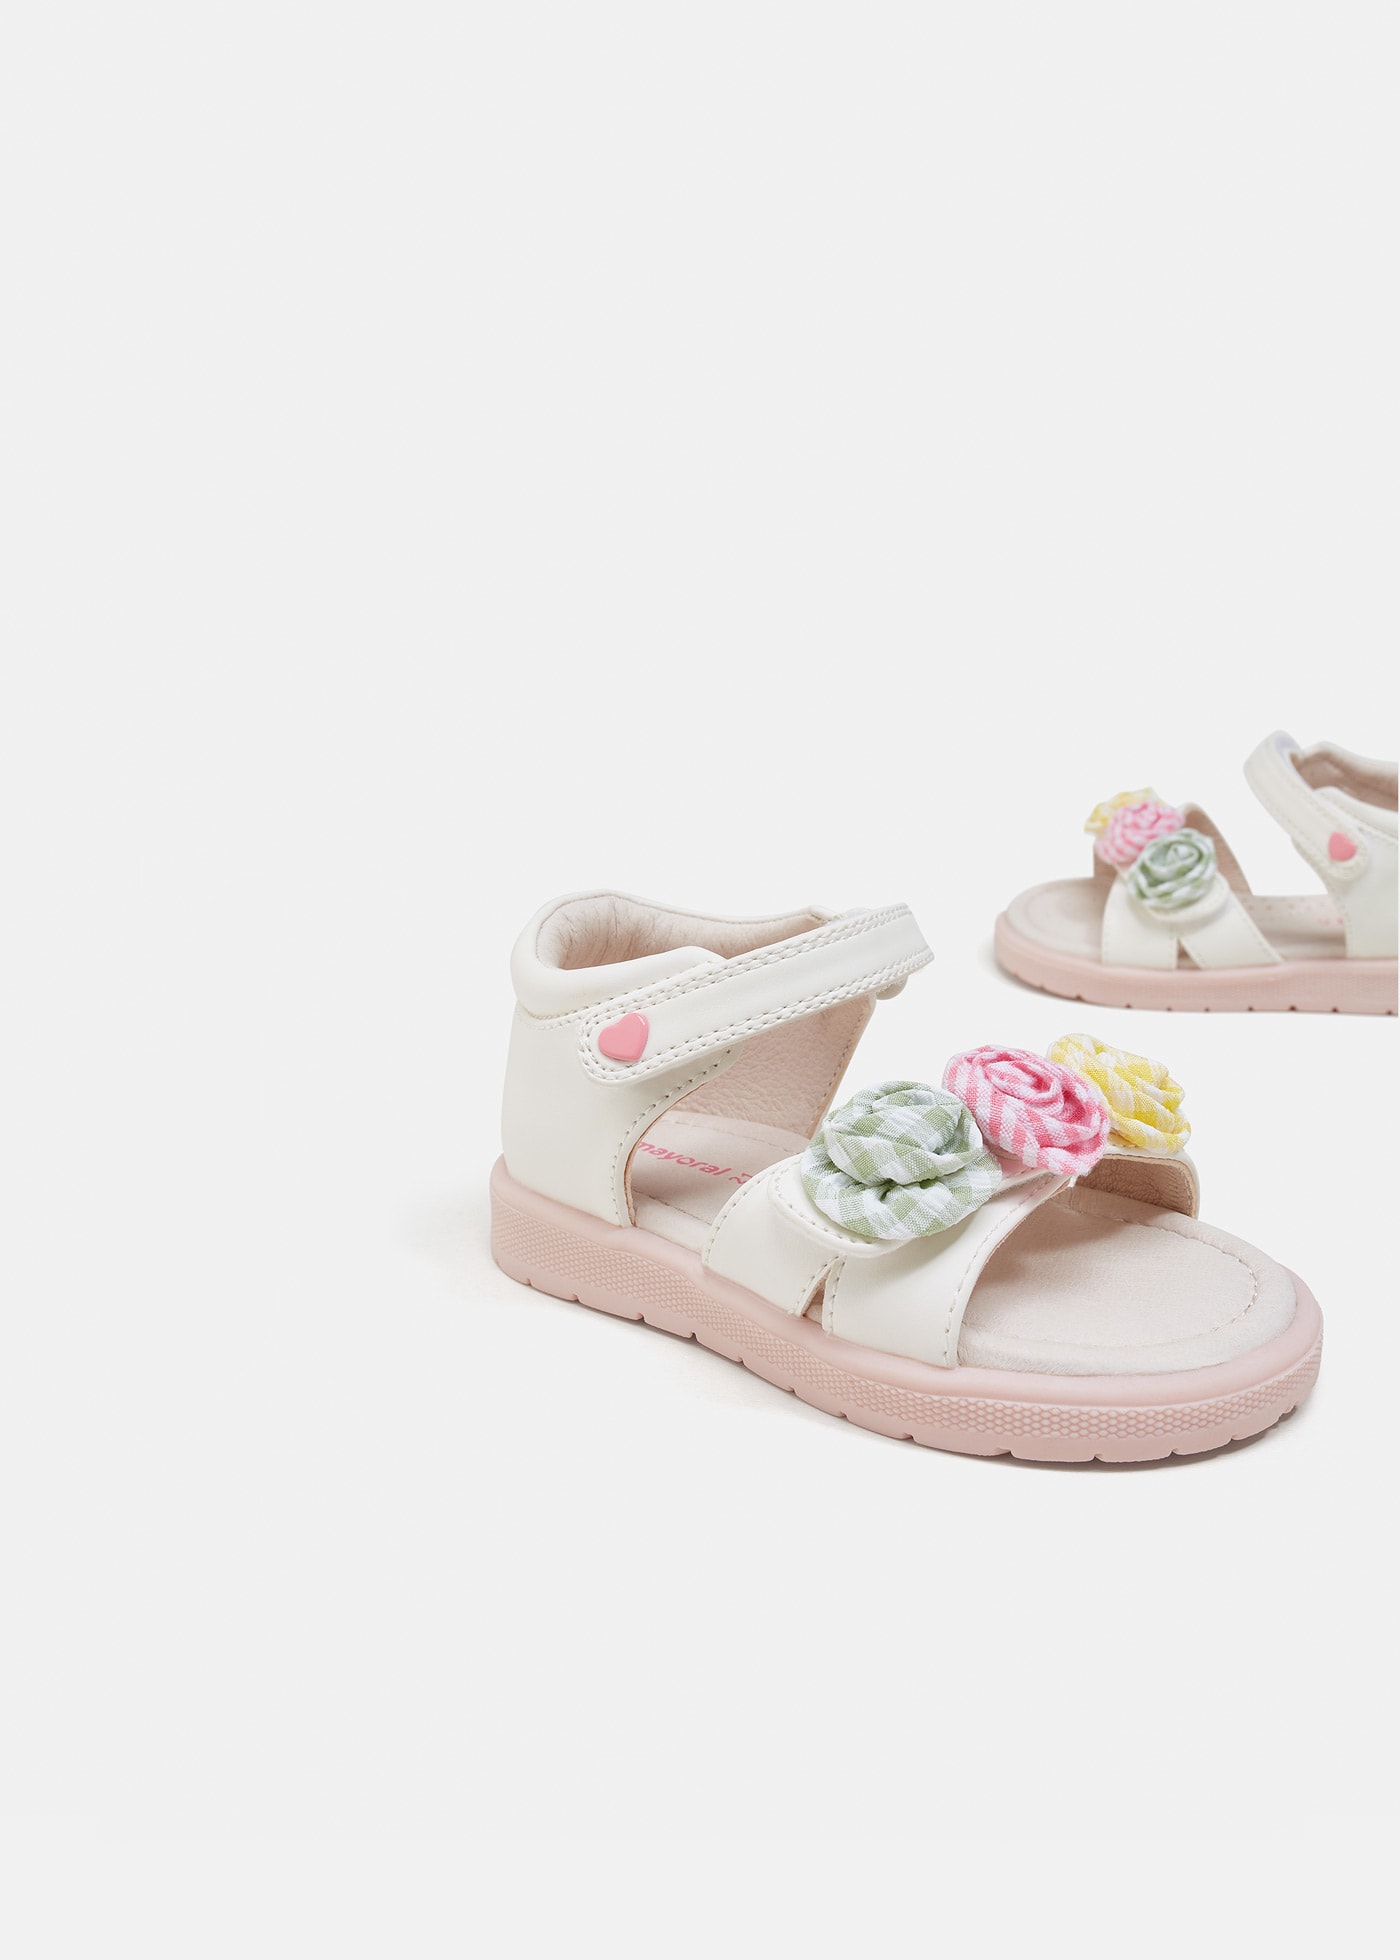 Sandałki z aplikacją kwiatek dla niemowlęcia